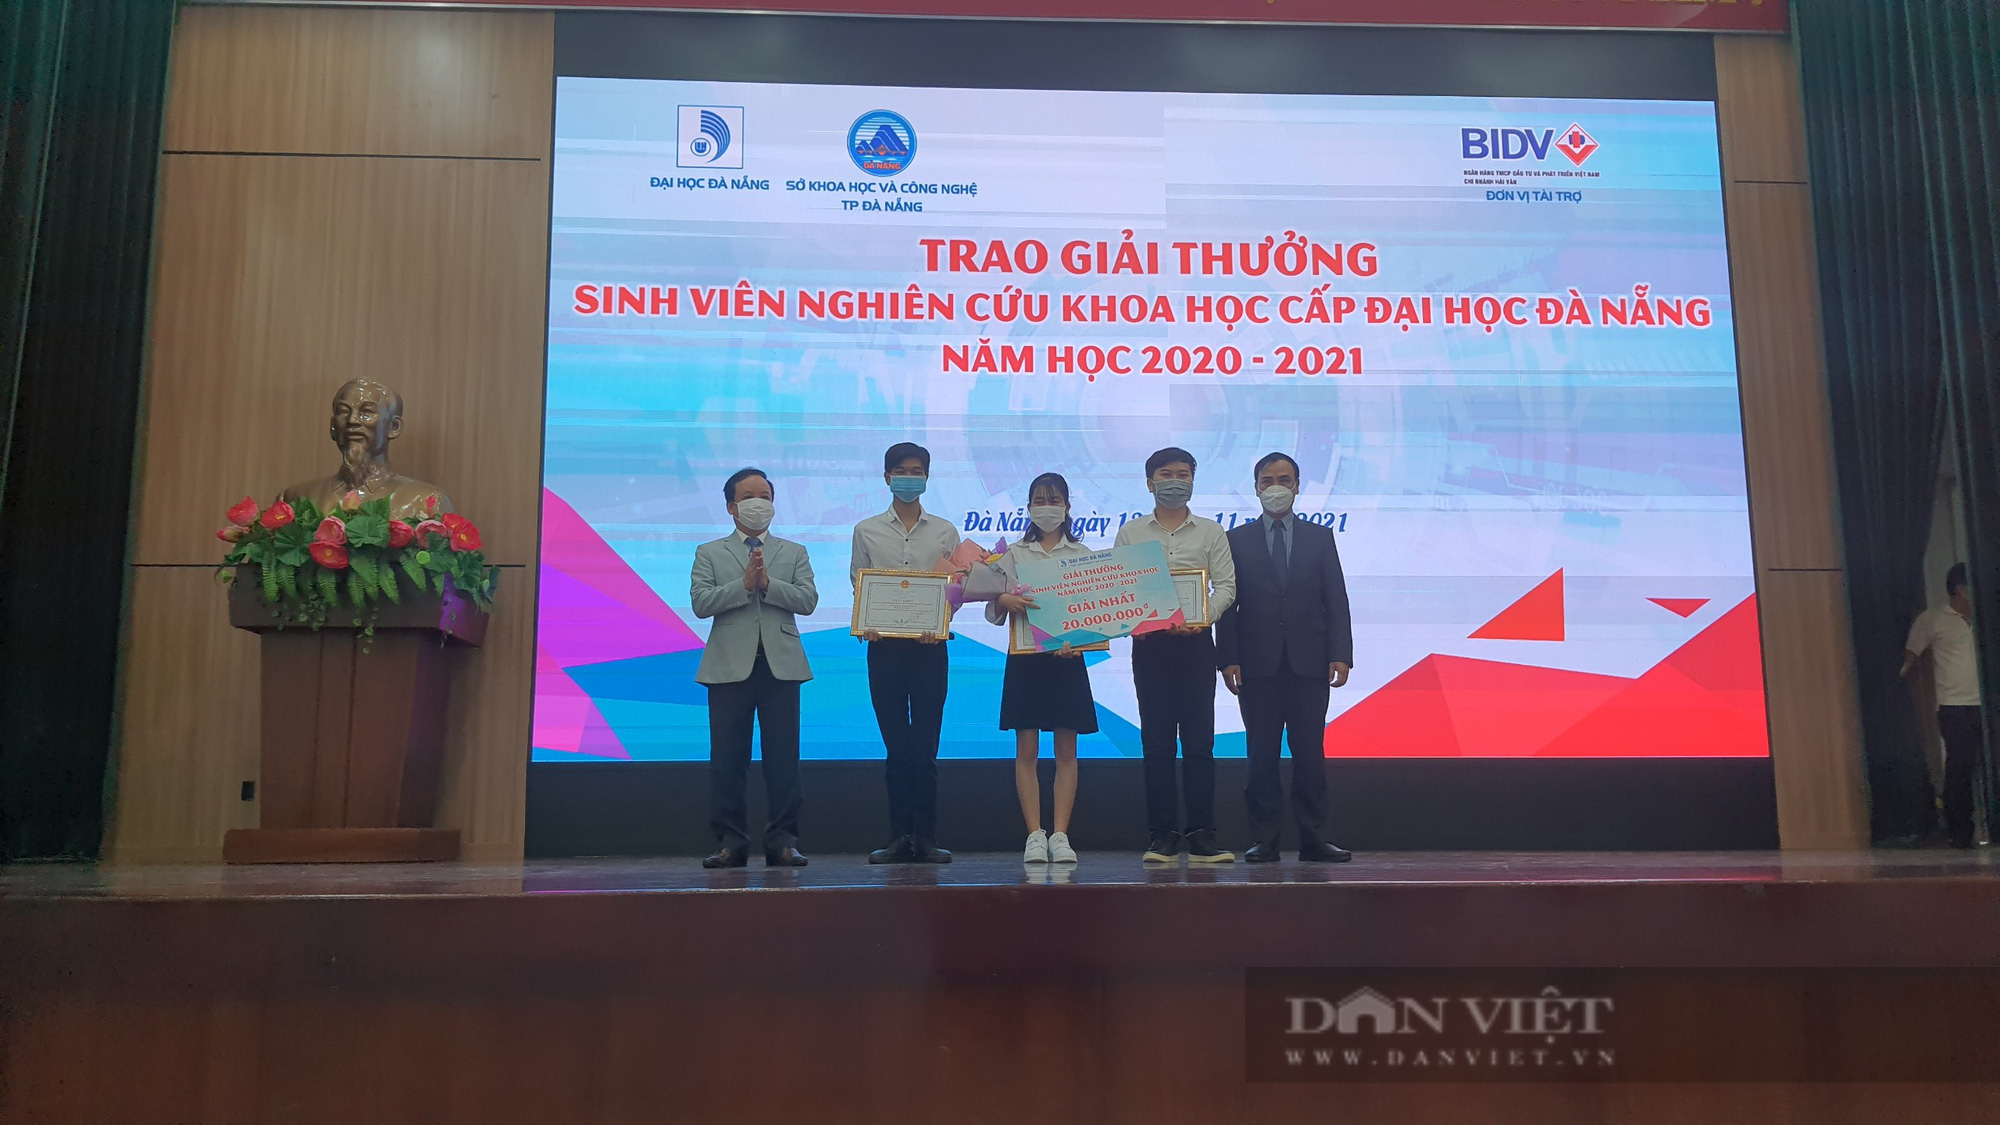 Festival Khoa học Công nghệ lần thứ 3, năm 2021: Sân chơi bổ ích cho sinh viên Đại học Đà Nẵng đam mê công nghệ - Ảnh 1.